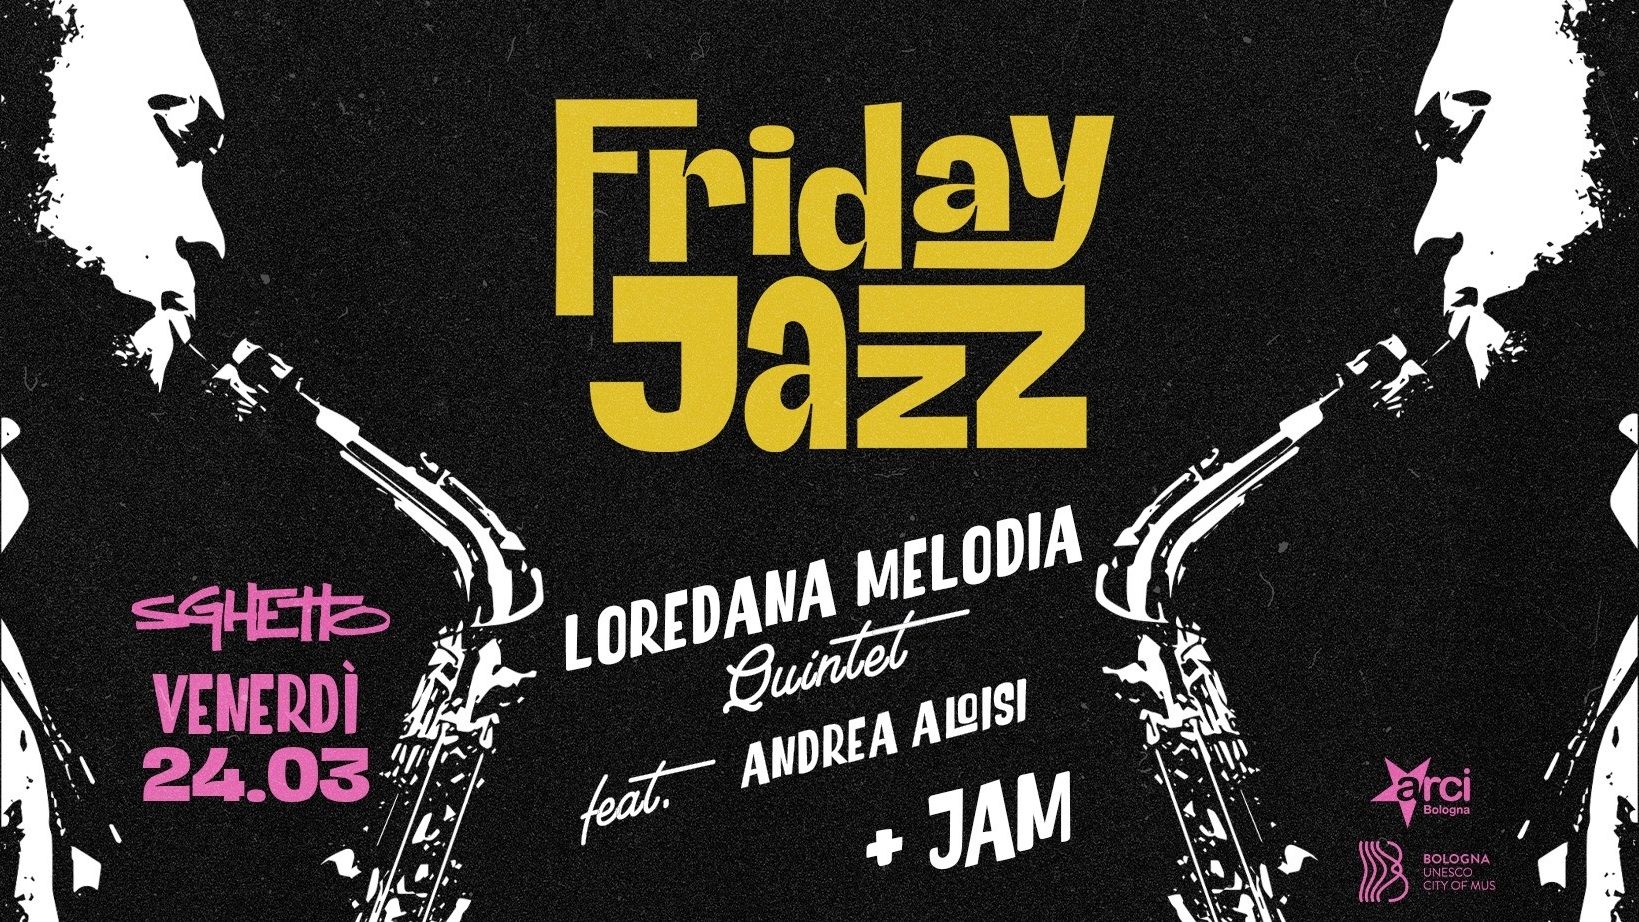 Friday Jazz - Loredana Melodia Quntet feat. Andrea Aloisi + jam